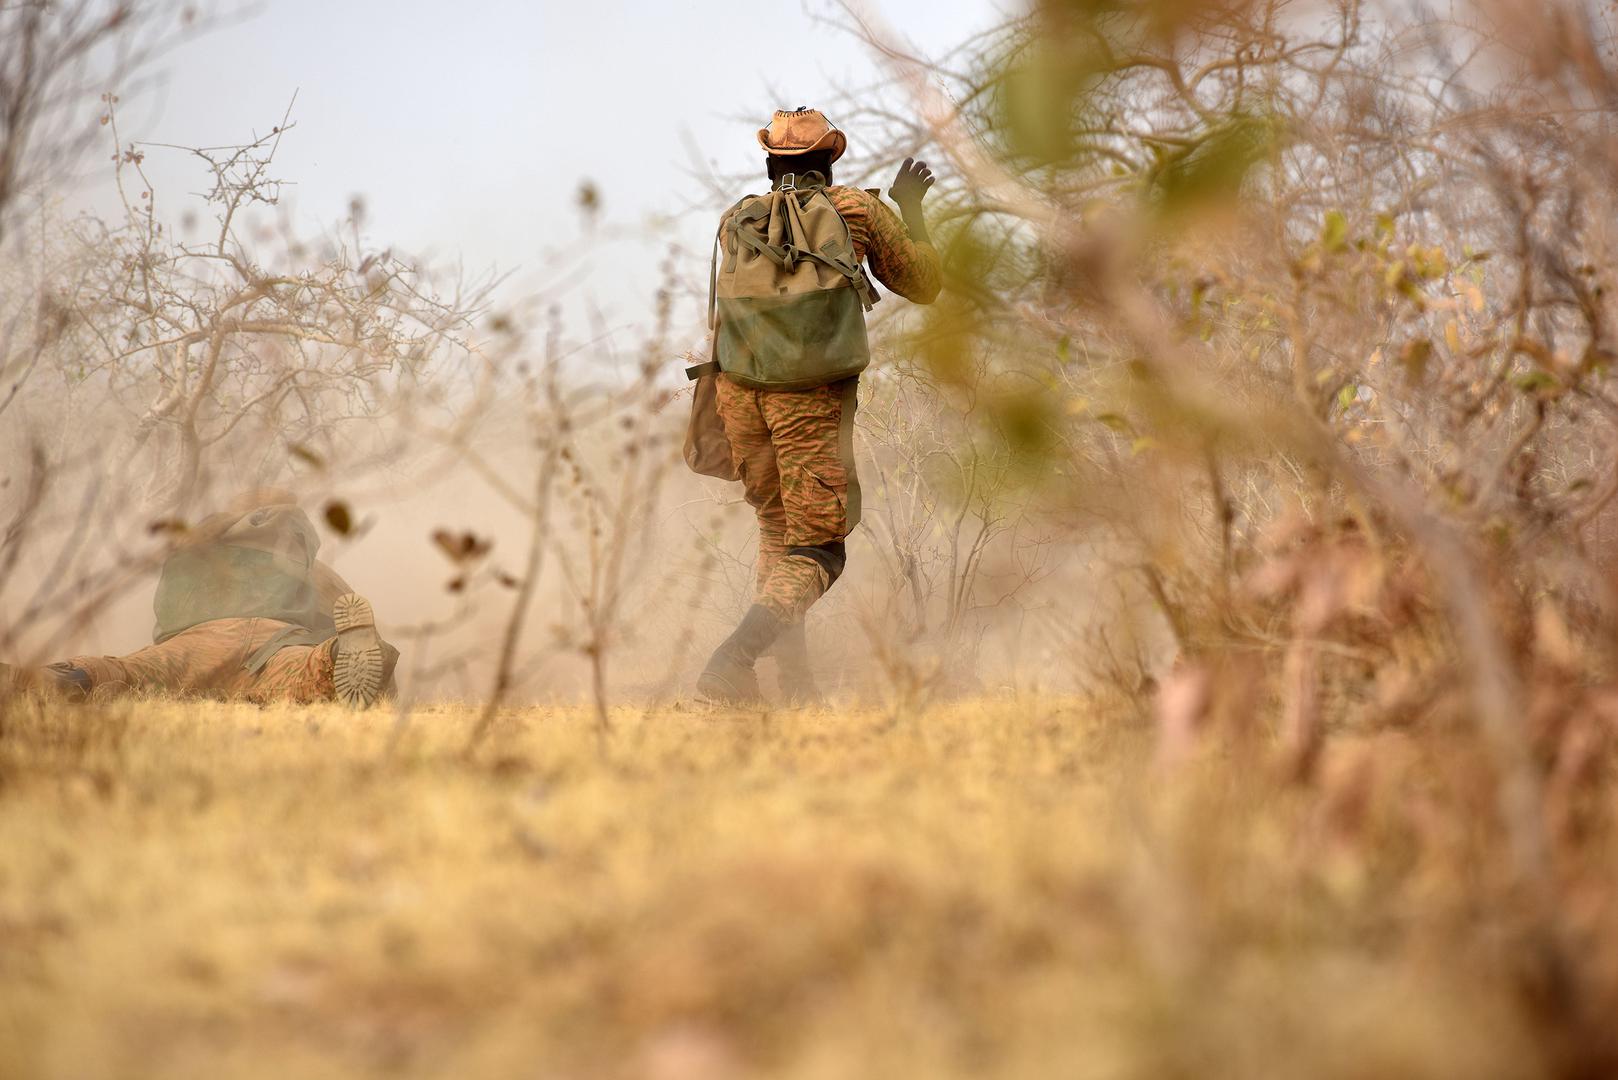 Des militaires burkinabés participent à un exercice d'entraînement en 2017 au Burkina Faso. (Photo de l'armée américaine, prise par le Sergent Benjamin Northcutt, chargé des Relations publiques au sein de la 3ème Unité des Forces spéciales (aéroportées), 